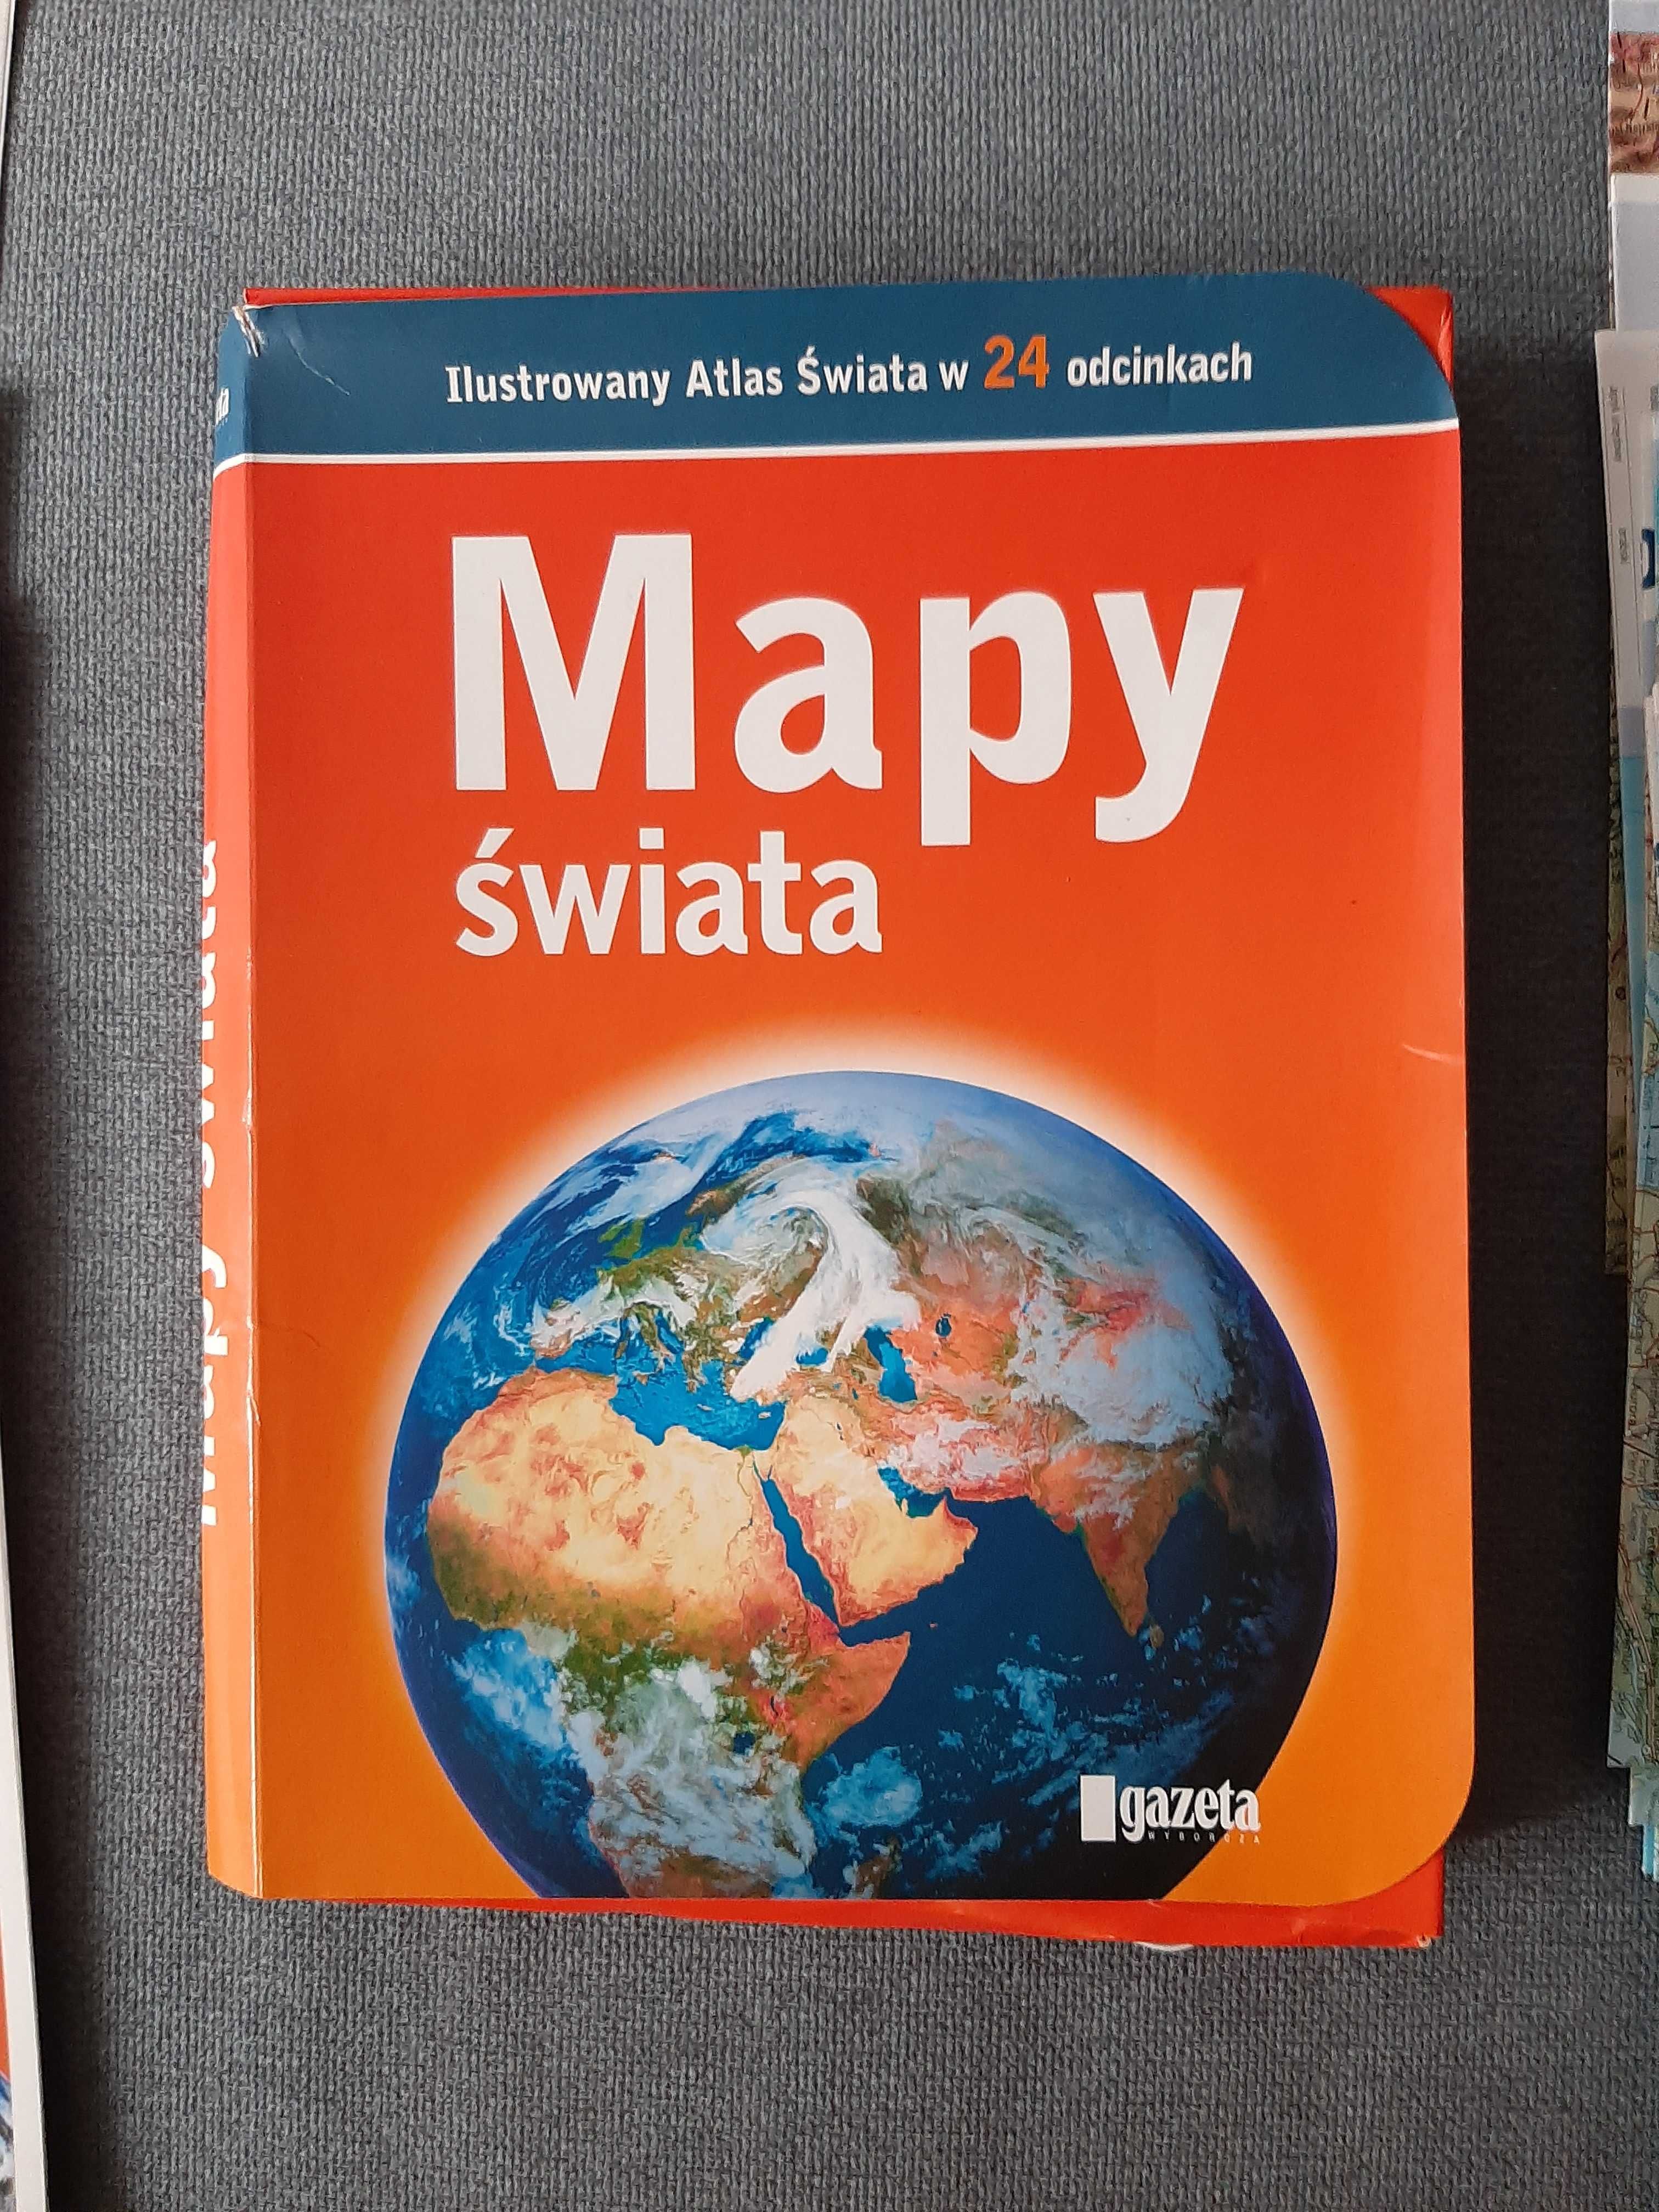 Ilustrowany atlas świata w 24 odcinkach.